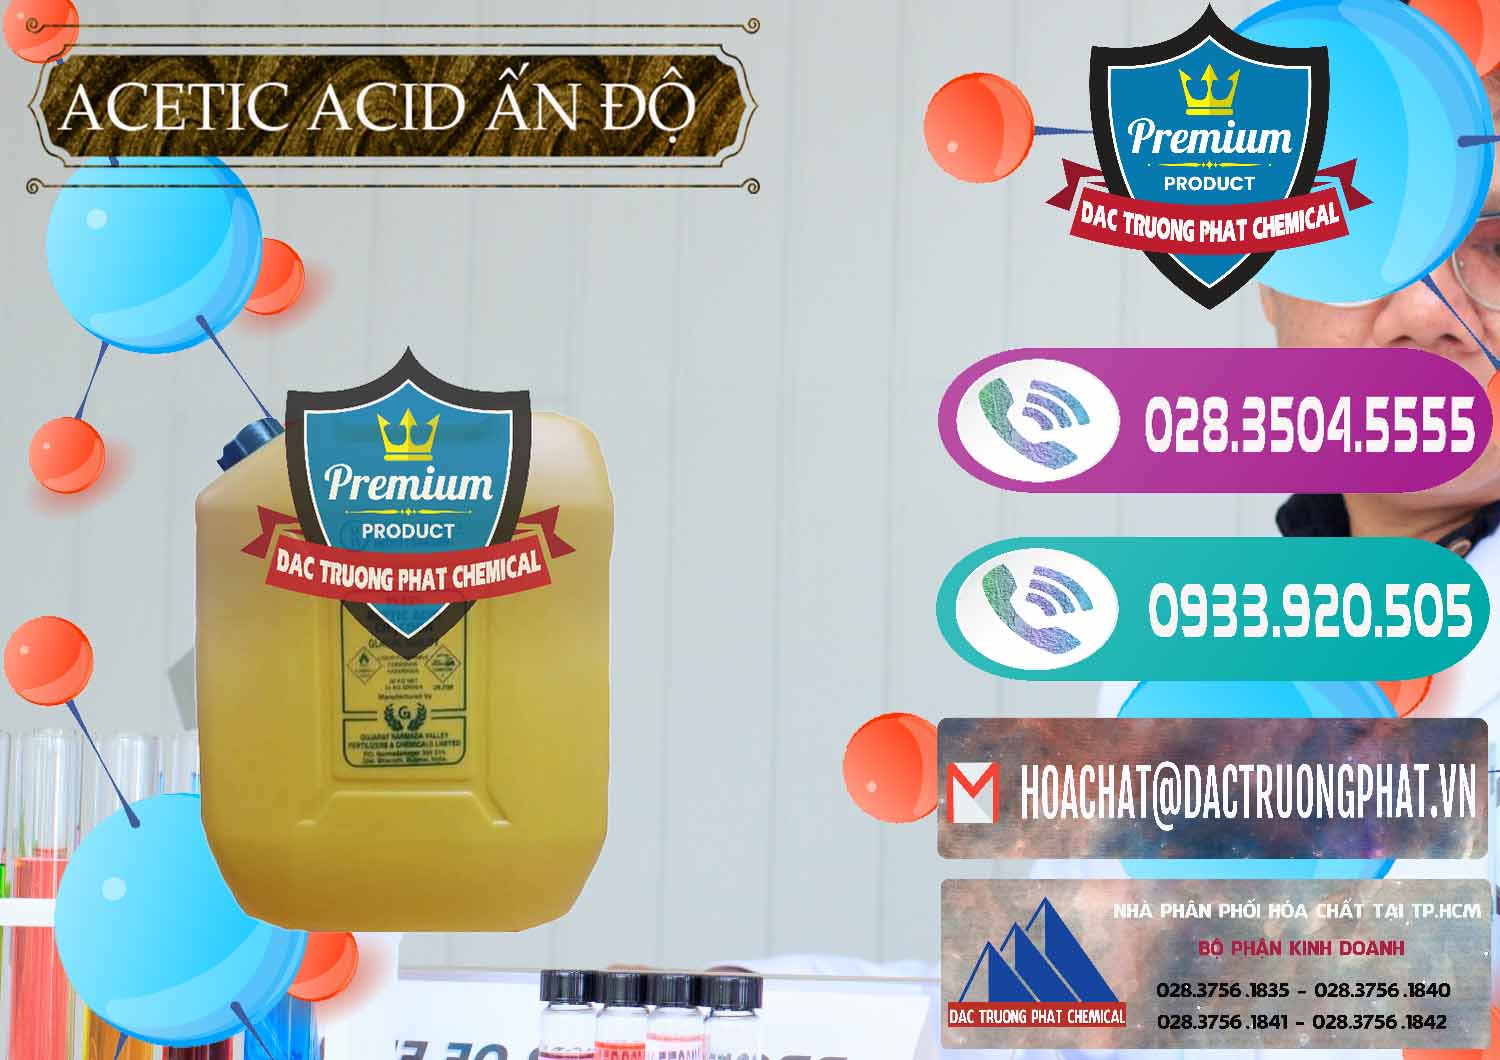 Nơi chuyên bán _ cung cấp Acetic Acid – Axit Acetic Ấn Độ India - 0359 - Cty chuyên phân phối _ nhập khẩu hóa chất tại TP.HCM - hoachatxulynuoc.com